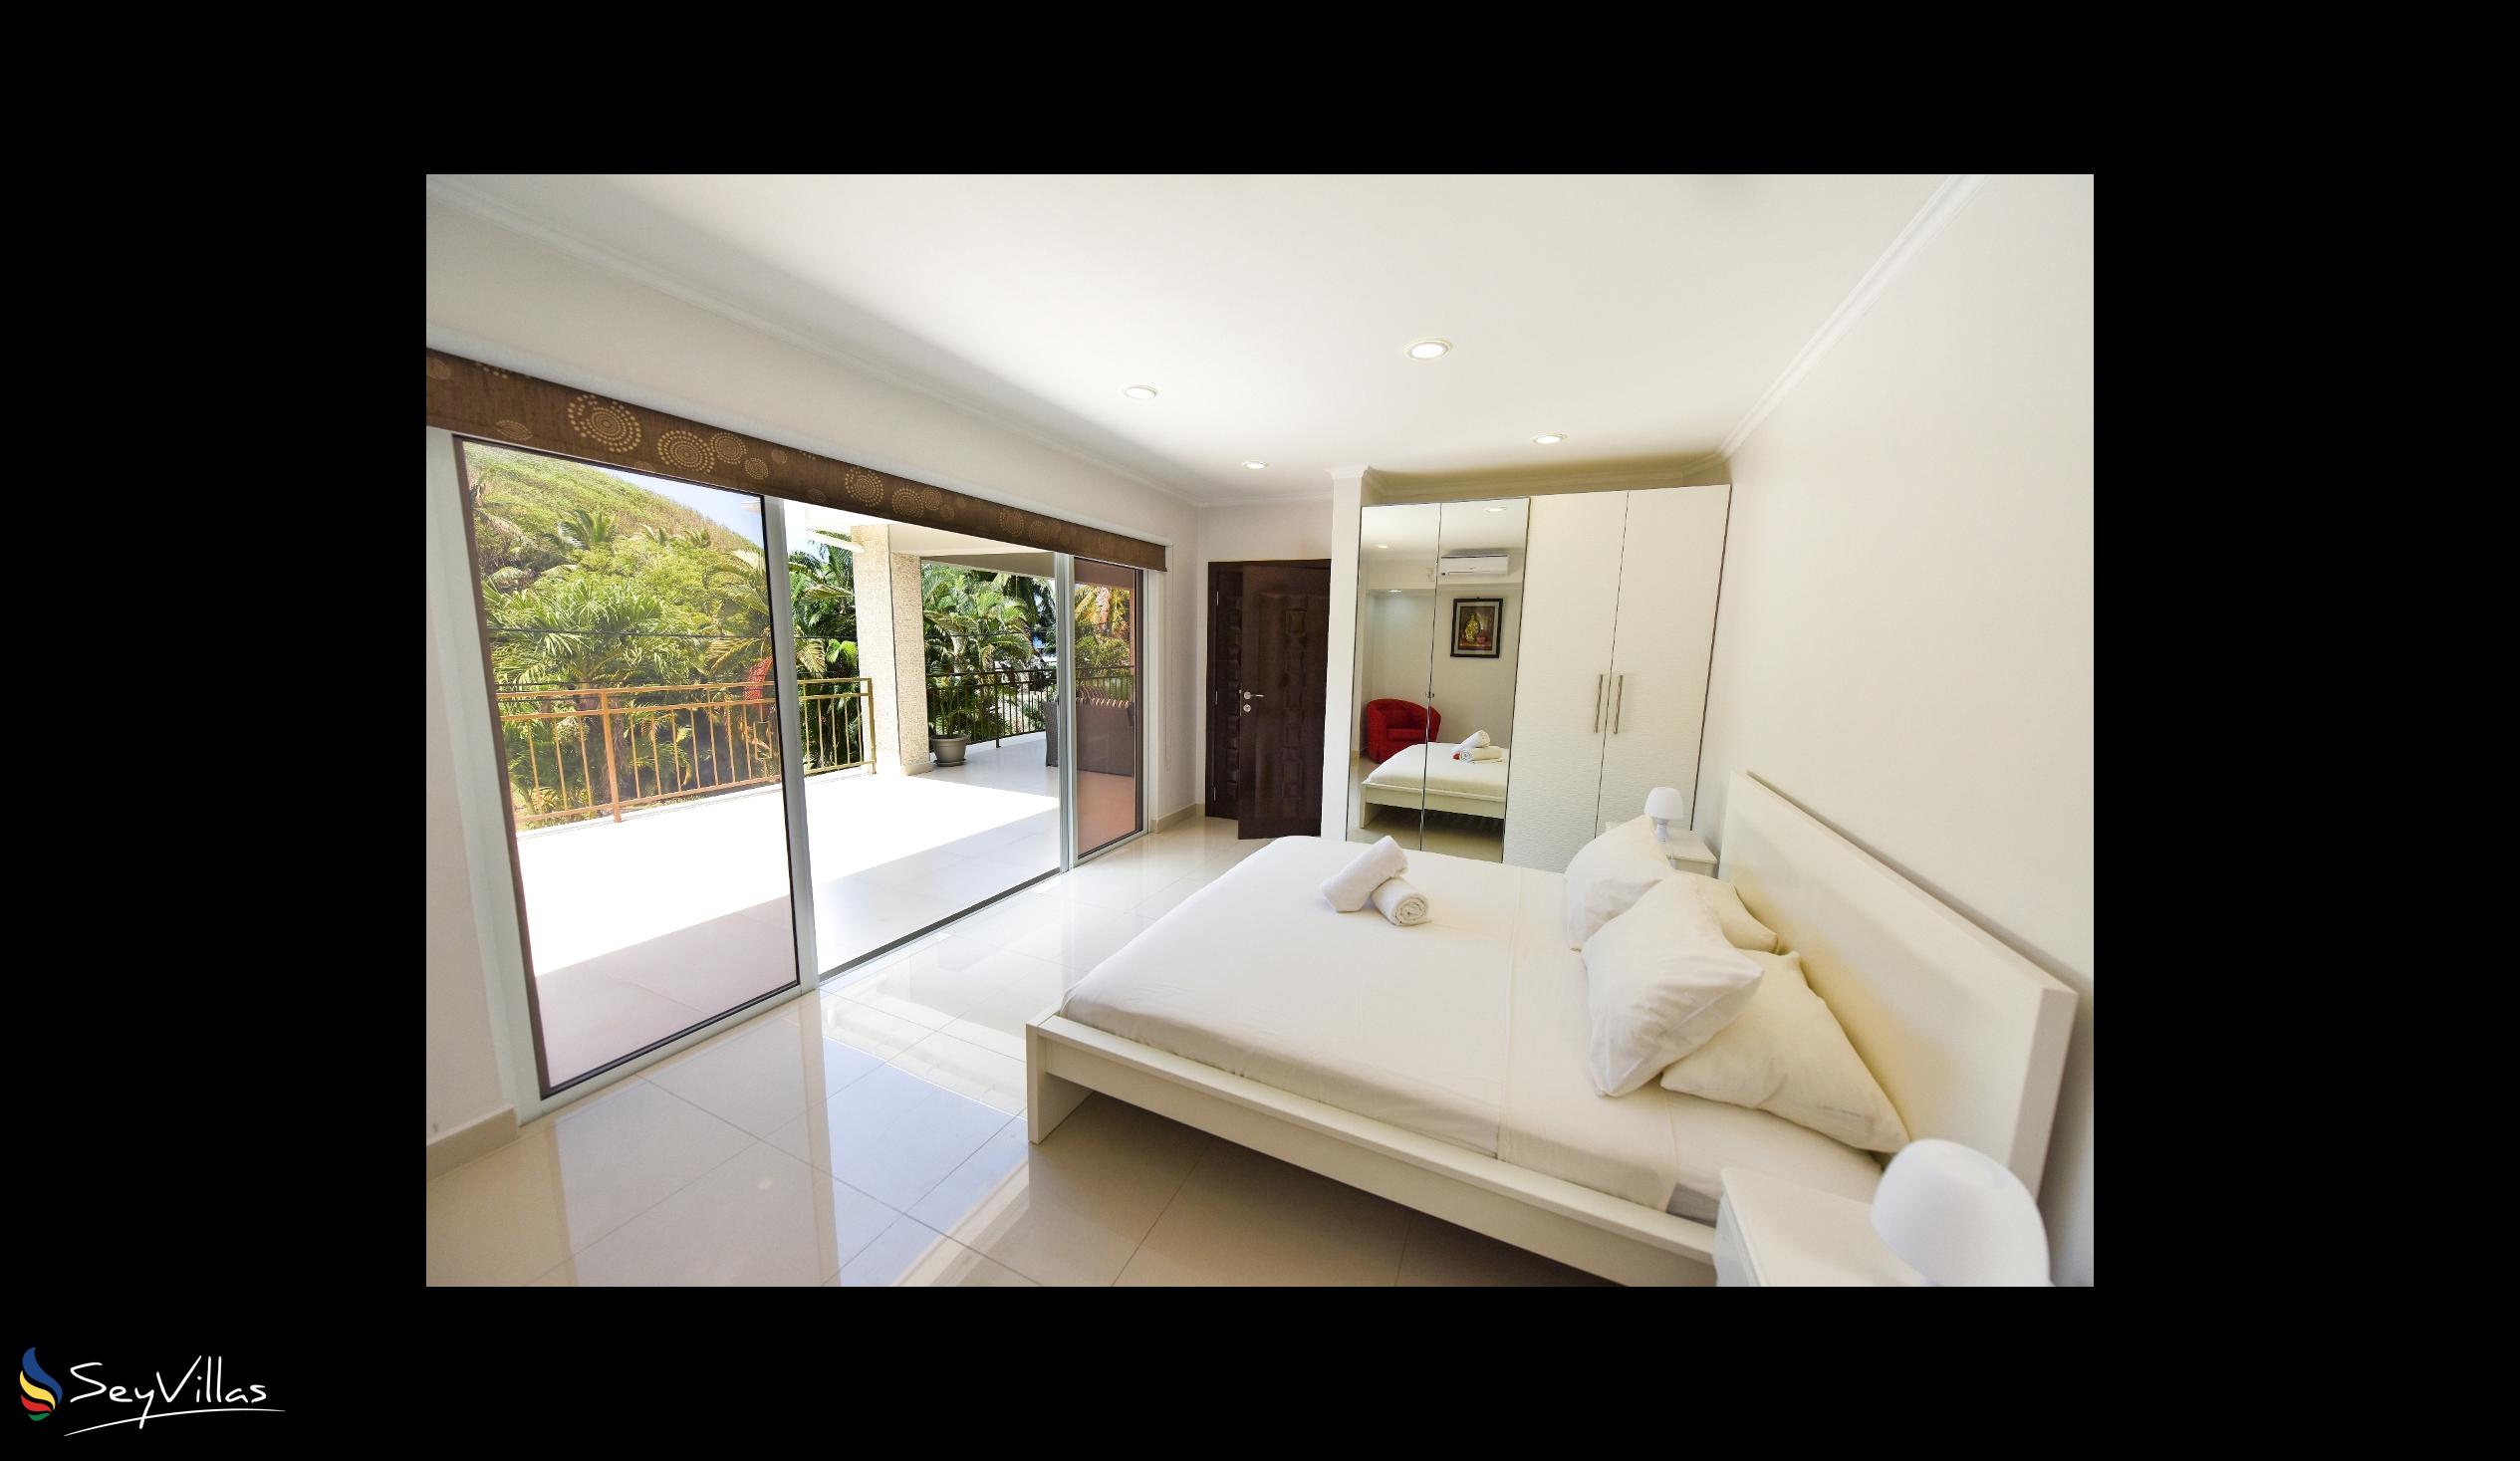 Foto 24: Moulin Kann Villas - Appartamento con 2 camere da letto - Mahé (Seychelles)